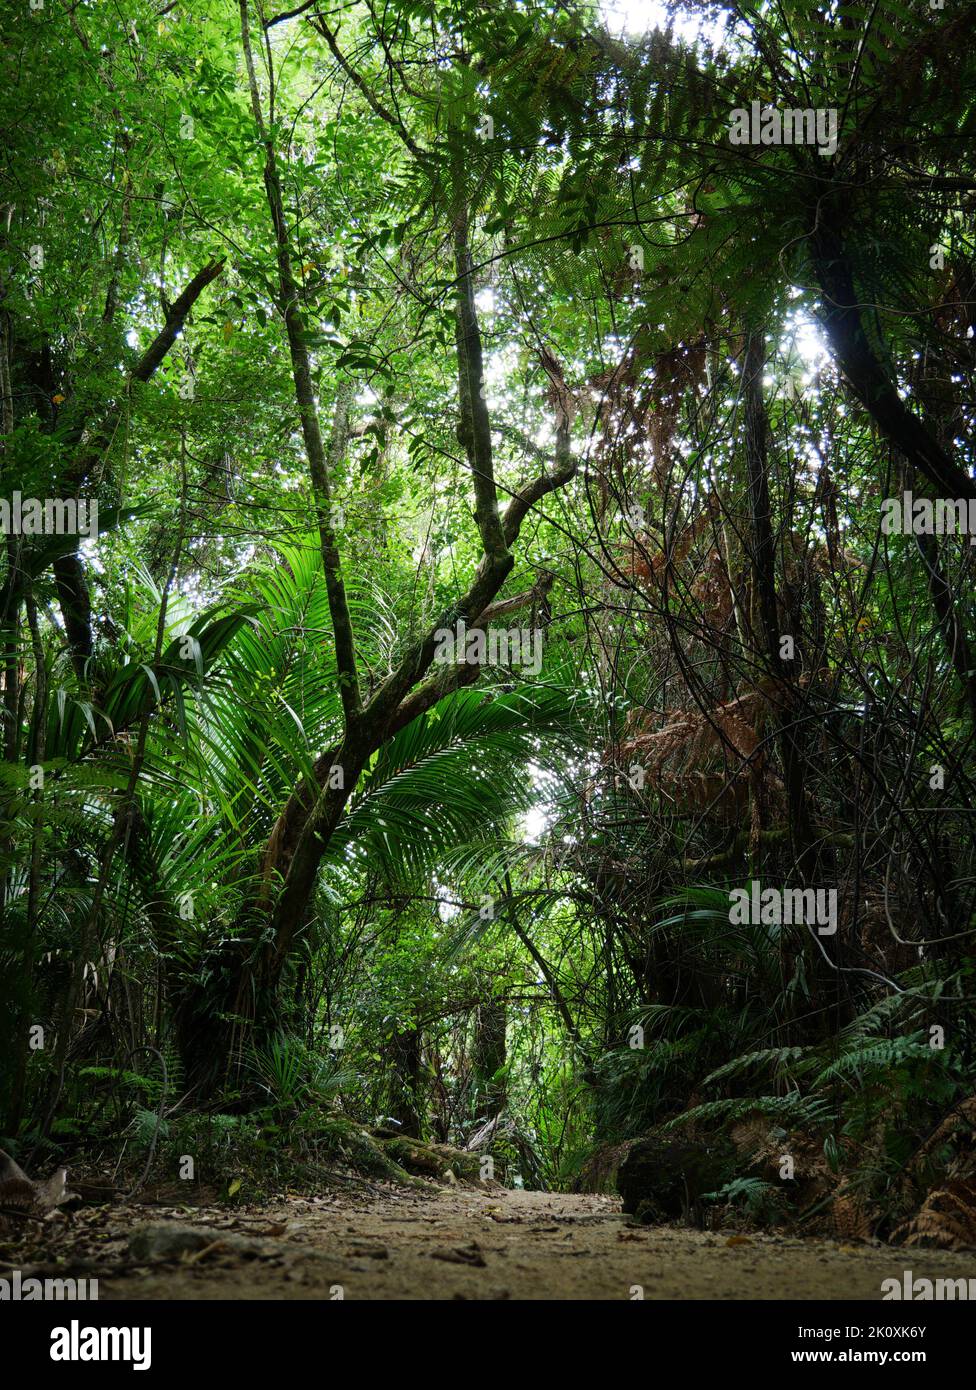 Wanderweg inmitten vom neuseeländischen Regenwald zwischen Baumfarnen - fern trees along way in the new Zealand rain forest Stock Photo